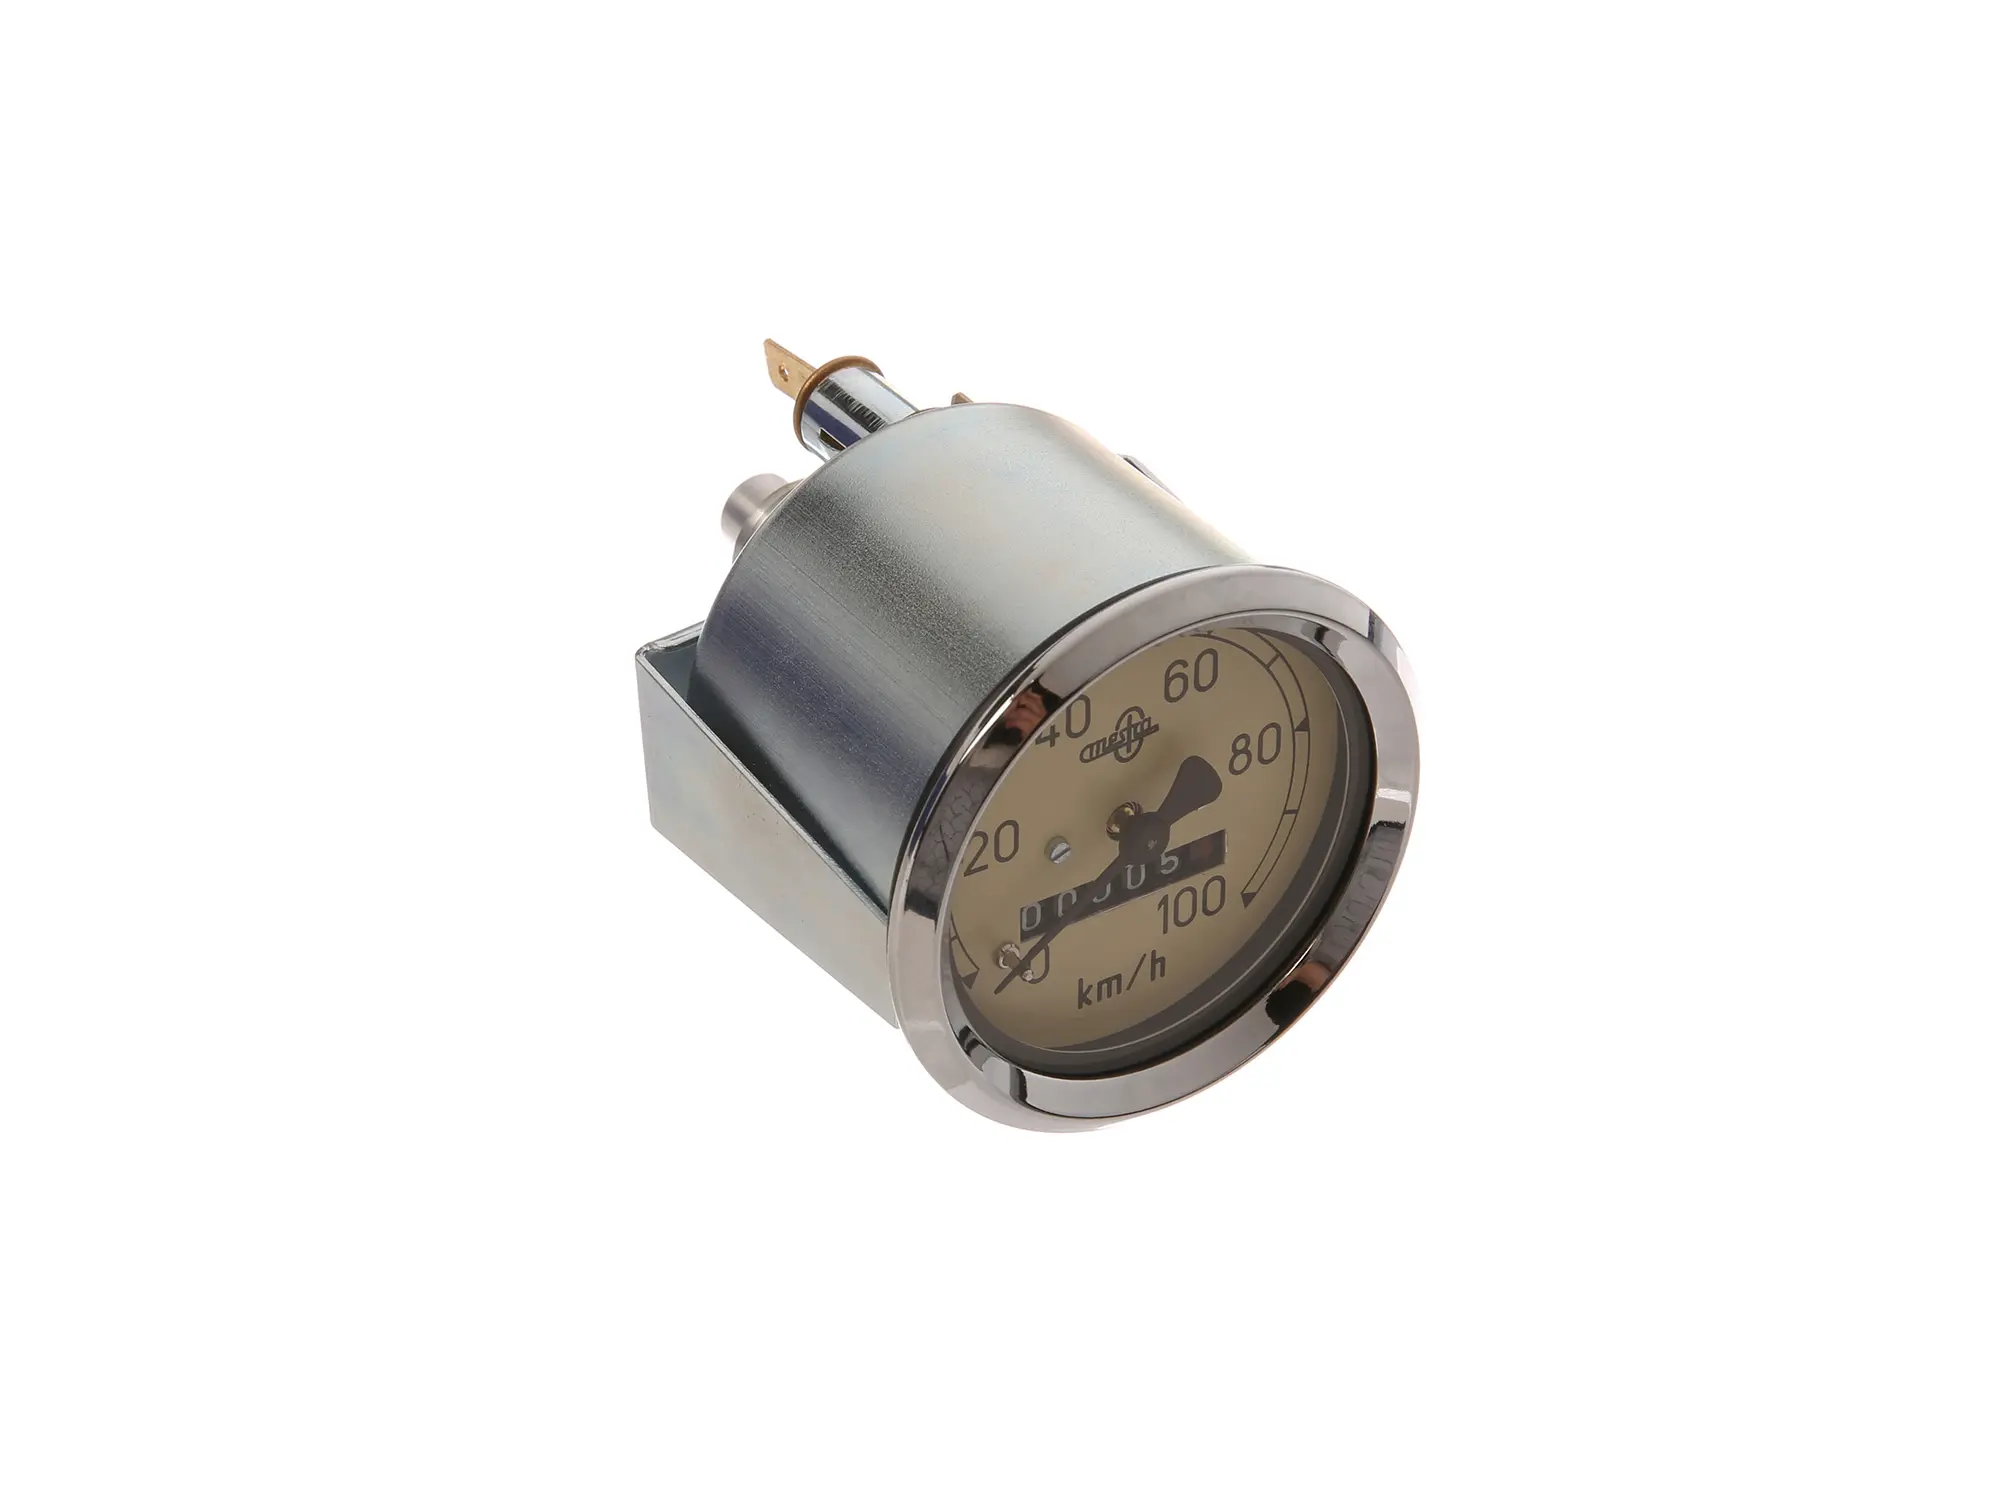 Tachometer MESTRA, 100 Km/h, AS 60mm - IWL Pitty, SR56 Wiesel, SR59 Berlin, Art.-Nr.: 10064121 - Bild 1